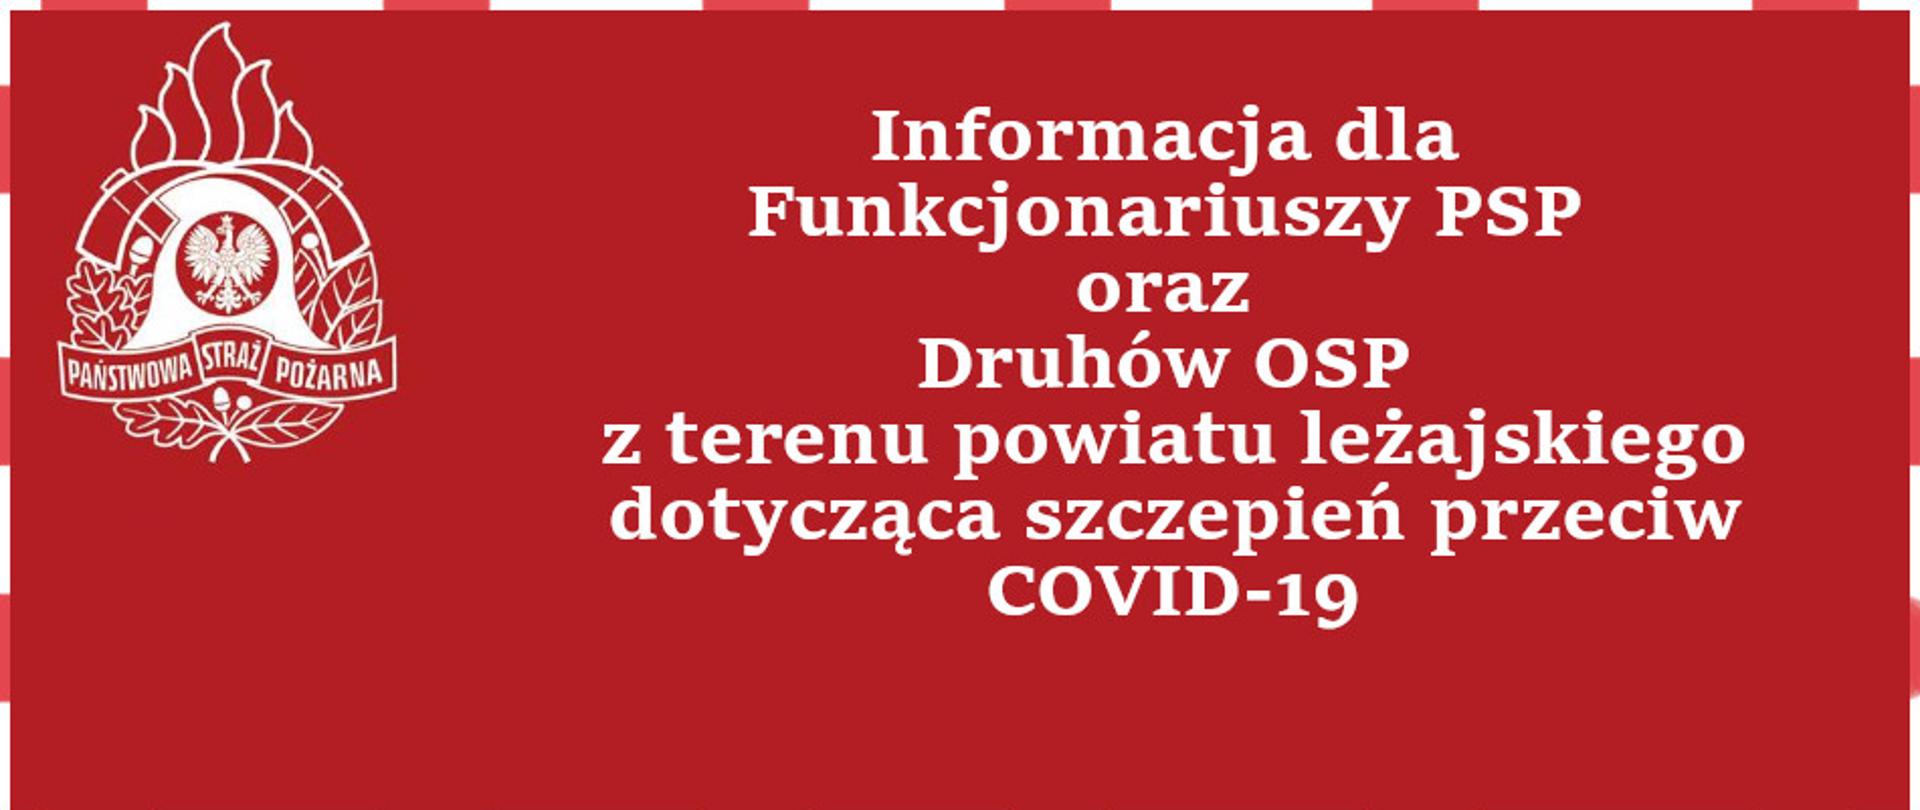 Informacja dla Funkcjonariuszy PSP oraz Druhów OSP z terenu powiatu leżajskiego dotycząca szczepień przeciw COVID-19